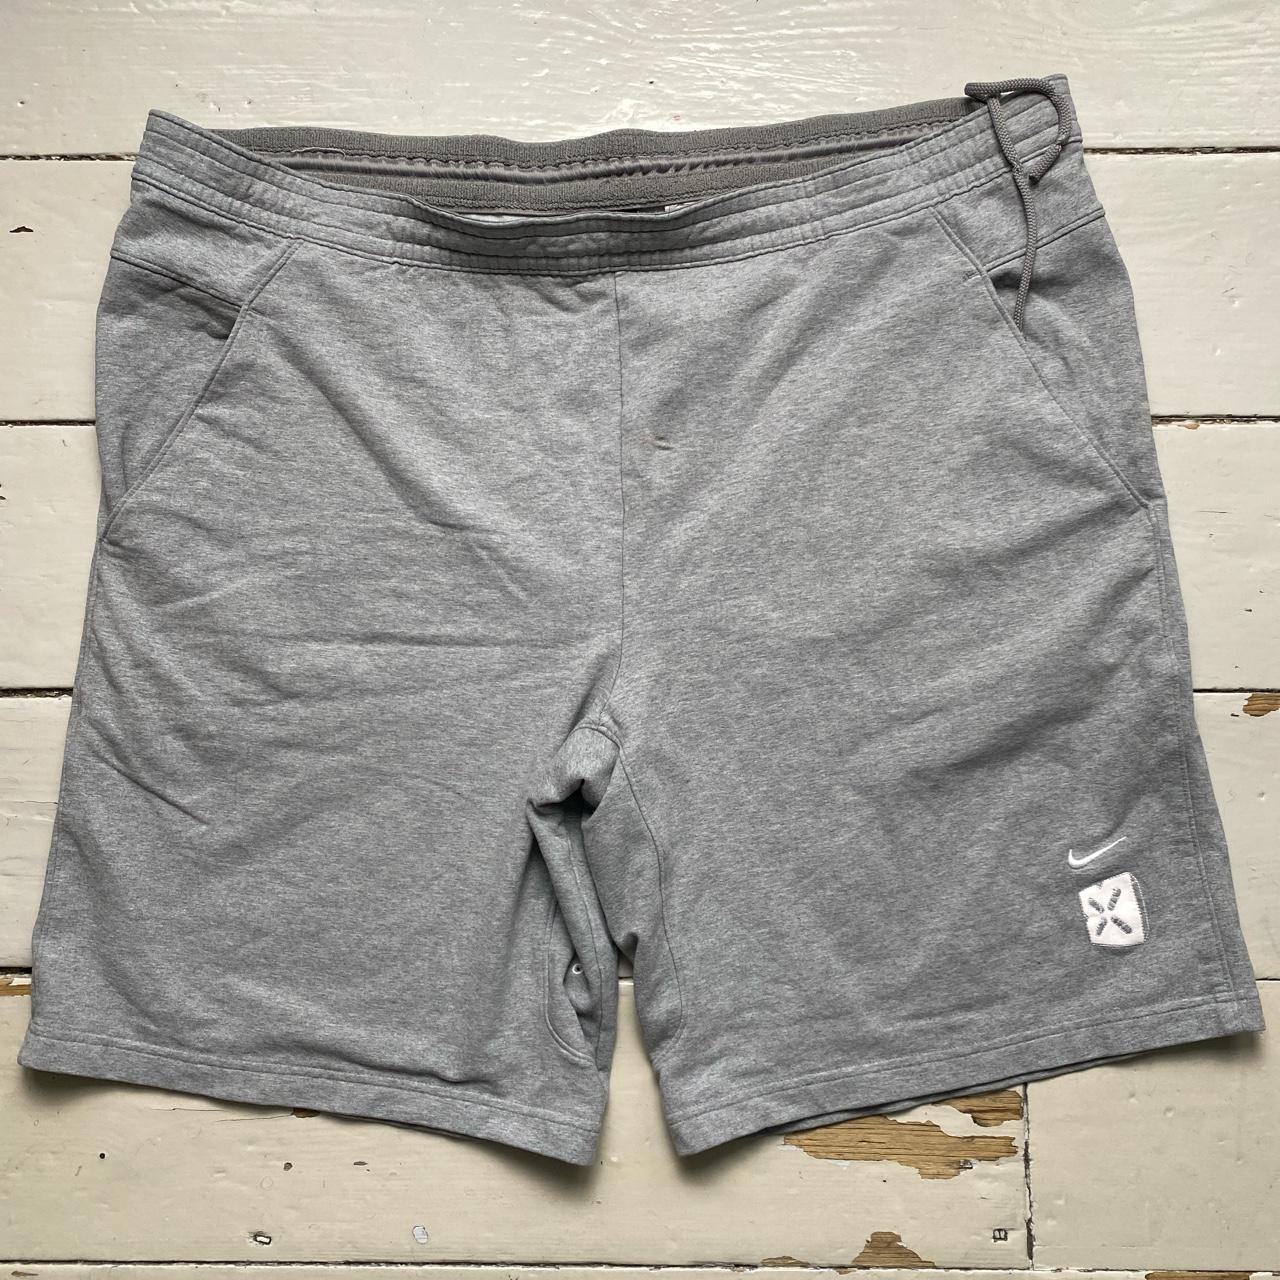 Nike Swoosh Grey and White Vintage Shorts